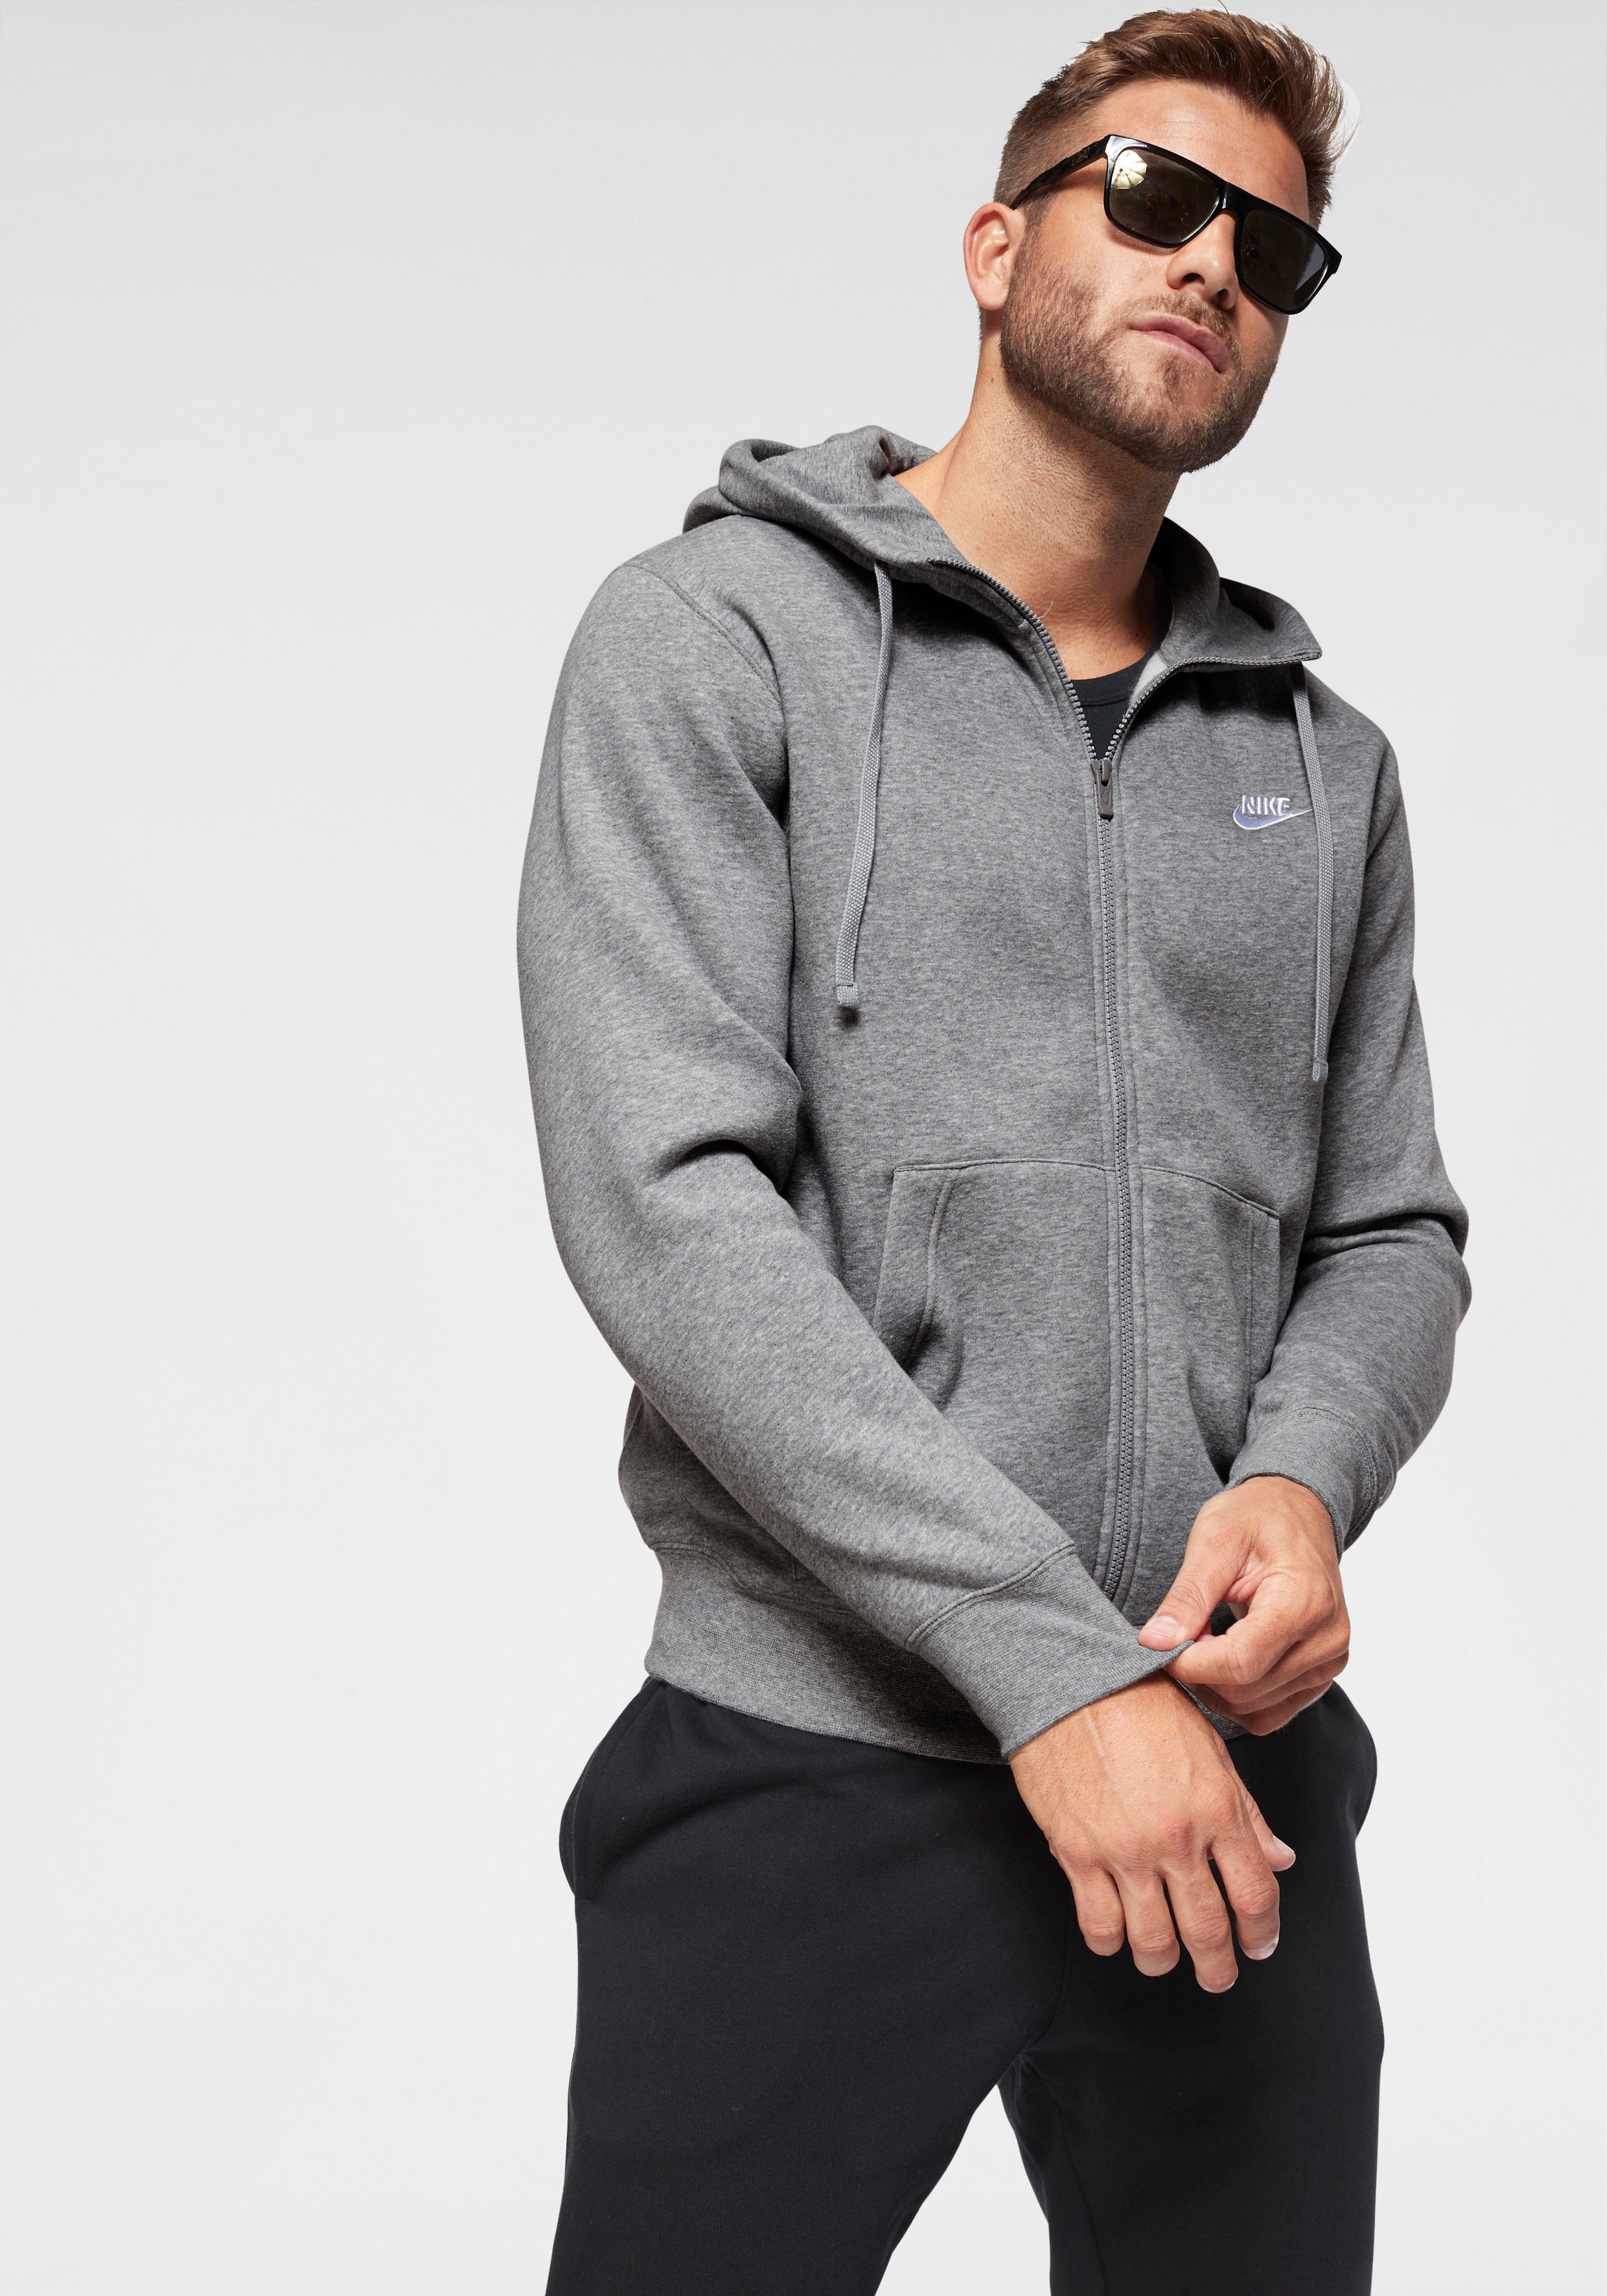 Fleece grau Nike Hoodie Sweatjacke Sportswear Full-Zip Men's Club